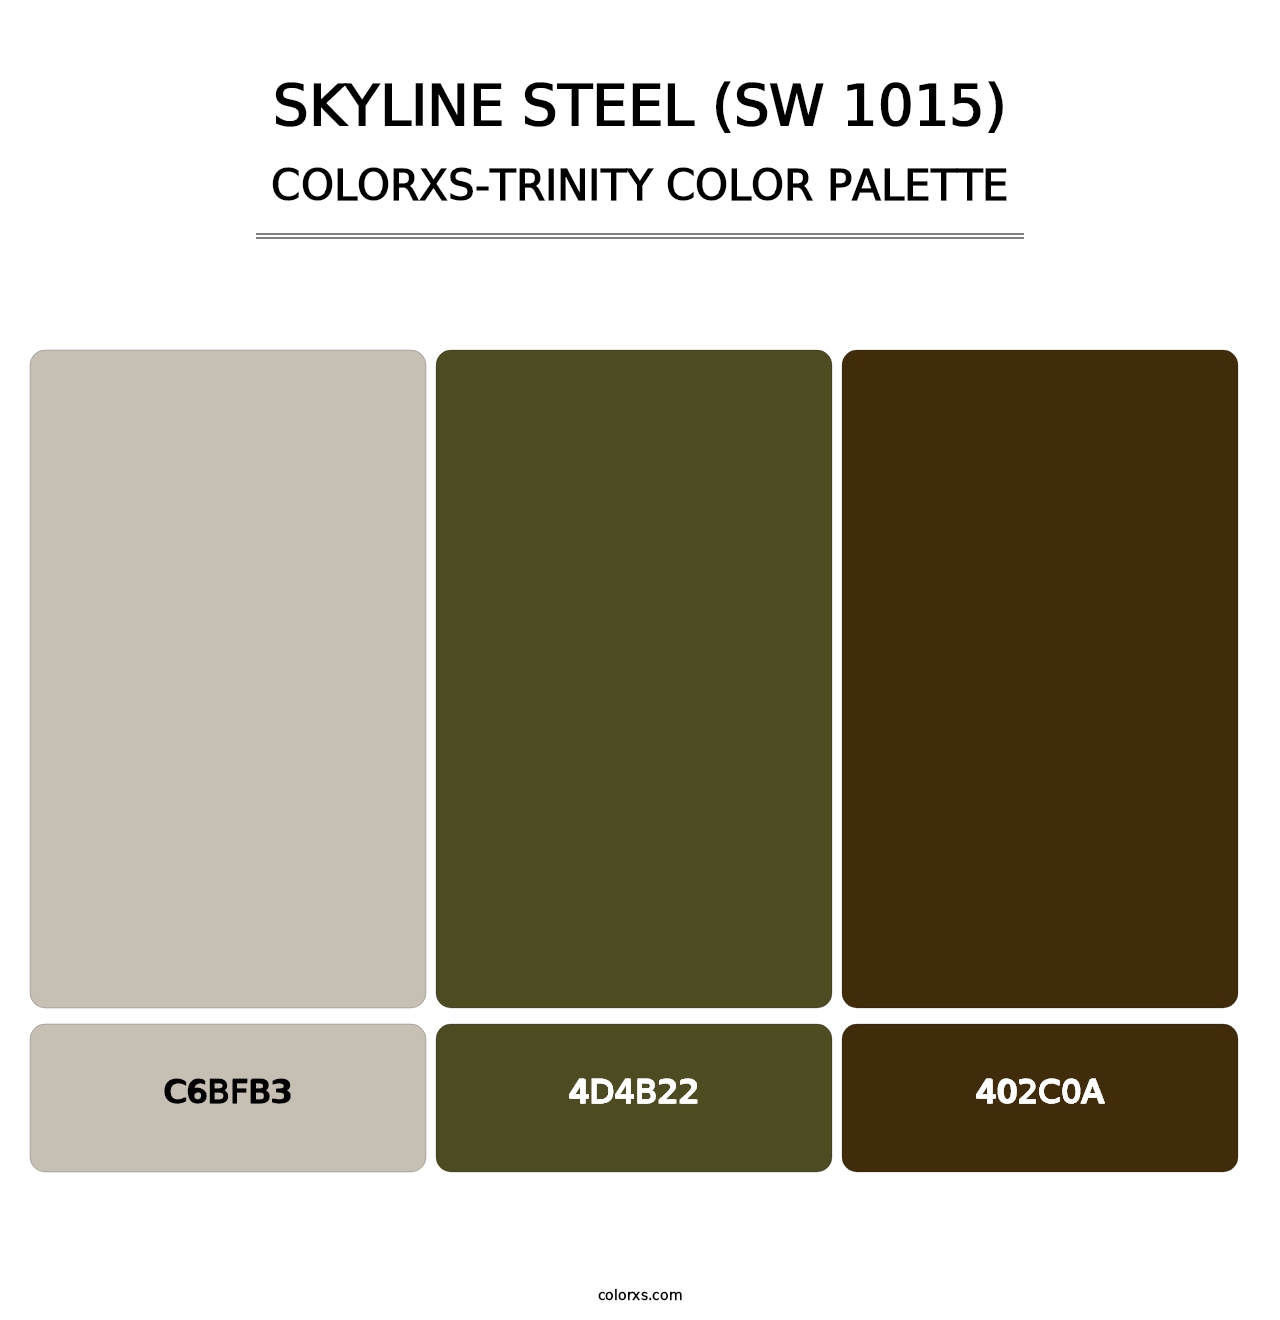 Skyline Steel (SW 1015) - Colorxs Trinity Palette